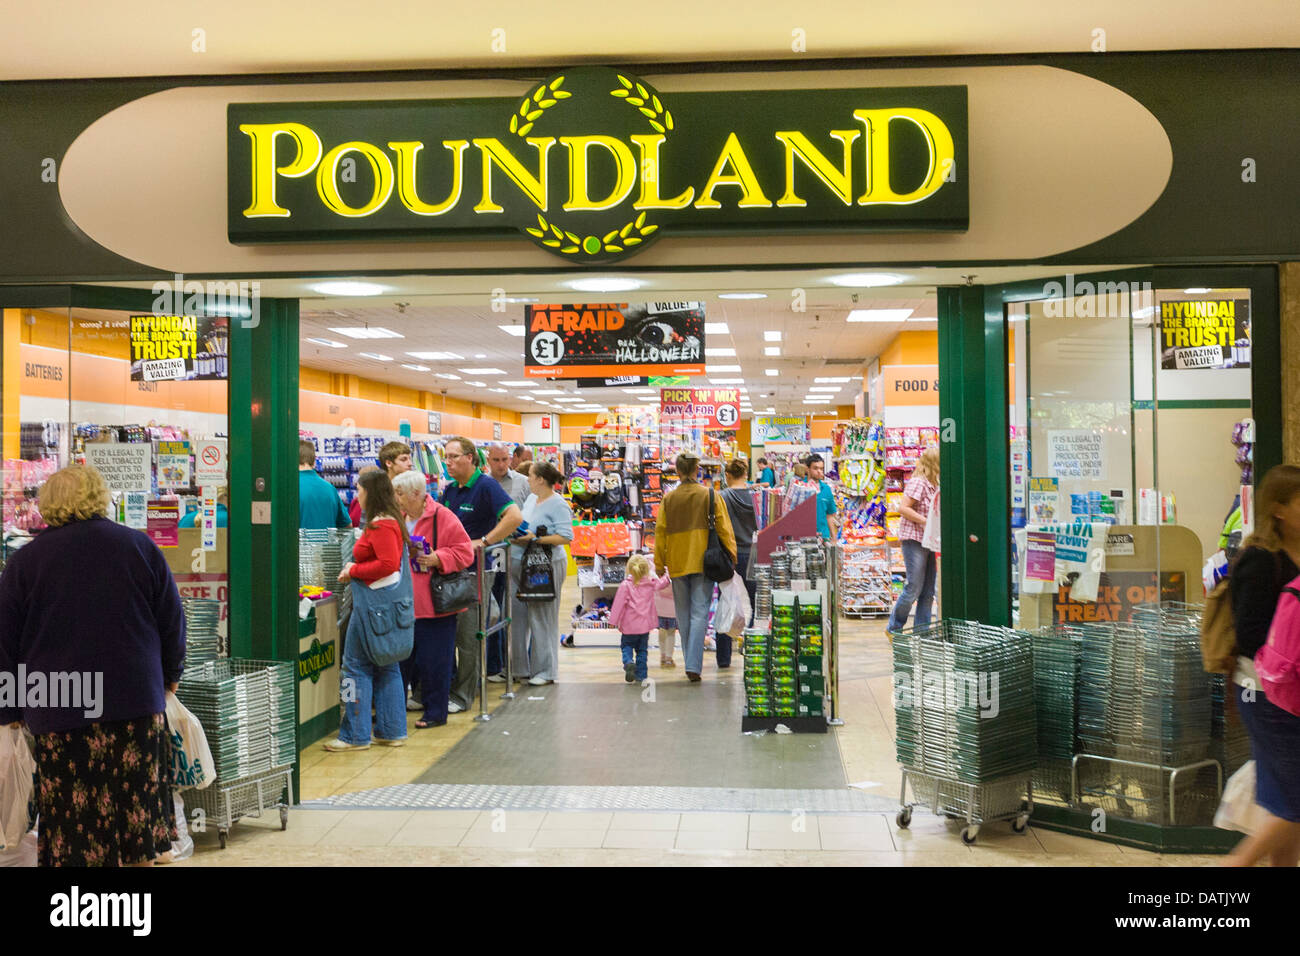 Poundland store, UK Stock Photo